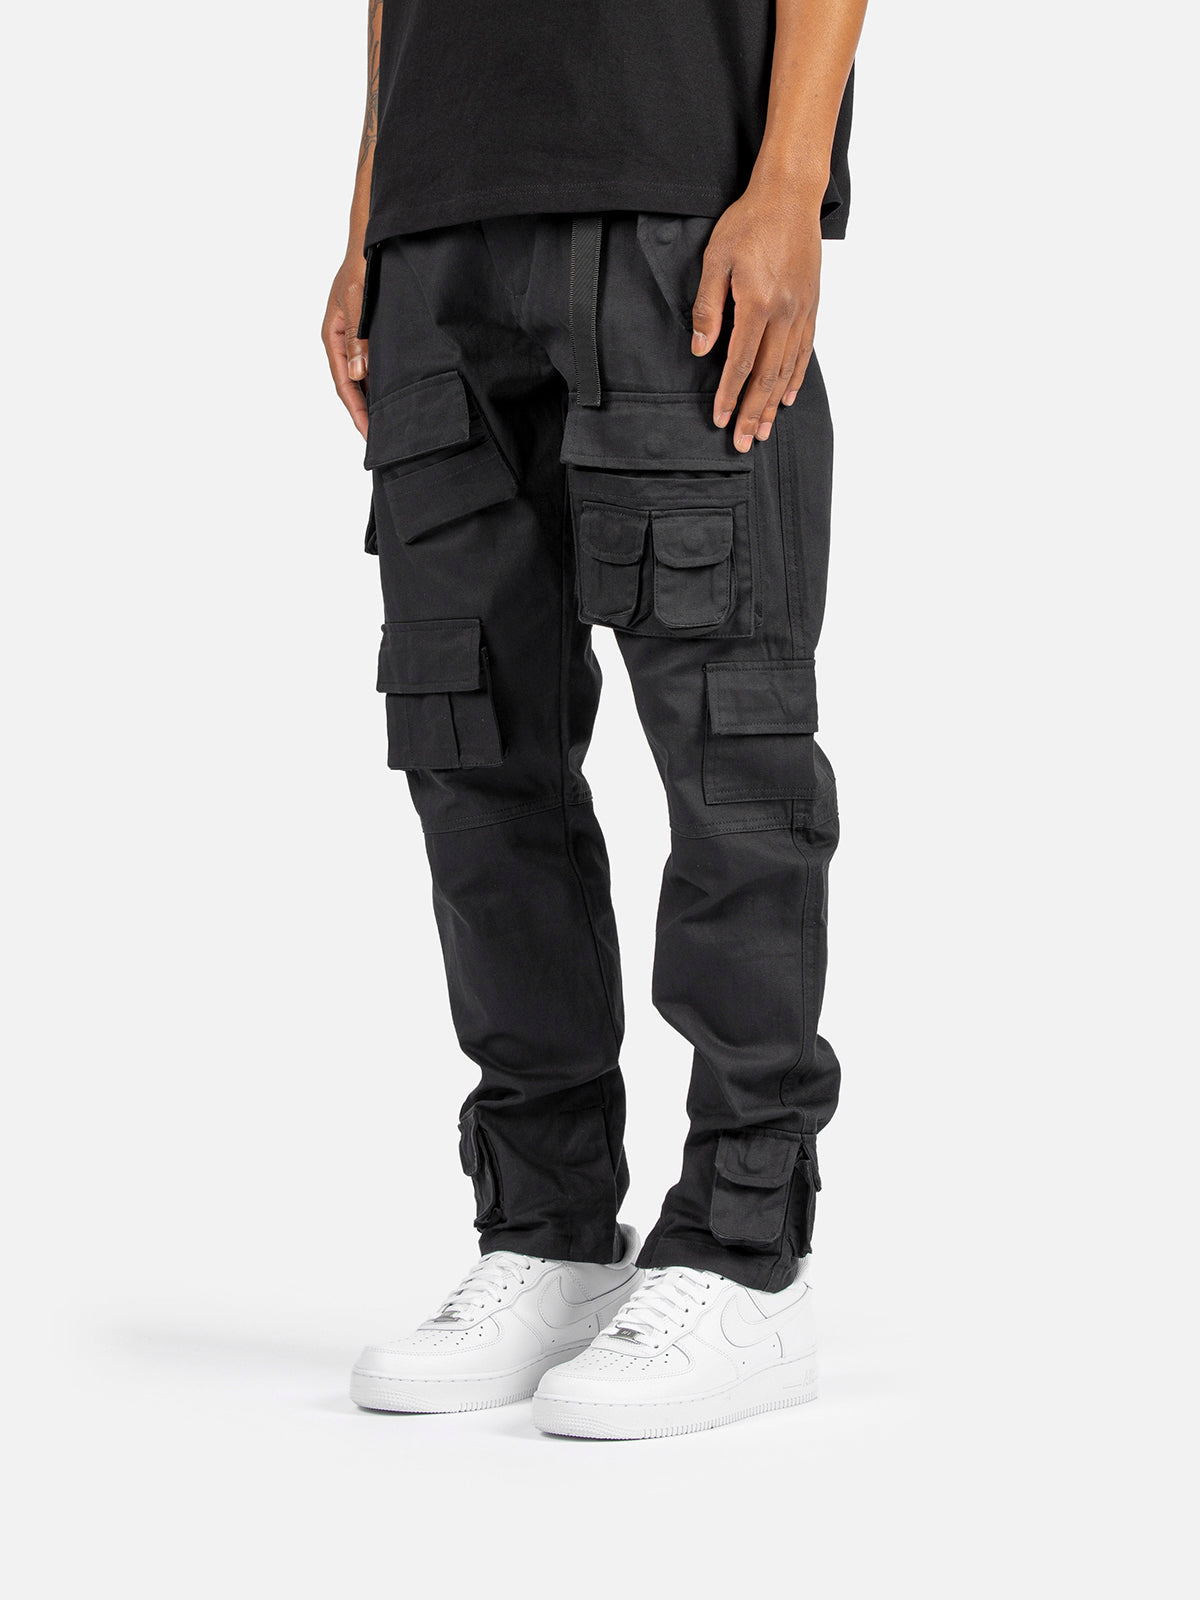 N1 Cargo Pants   Black   Blacktailor – BLACKTAILOR